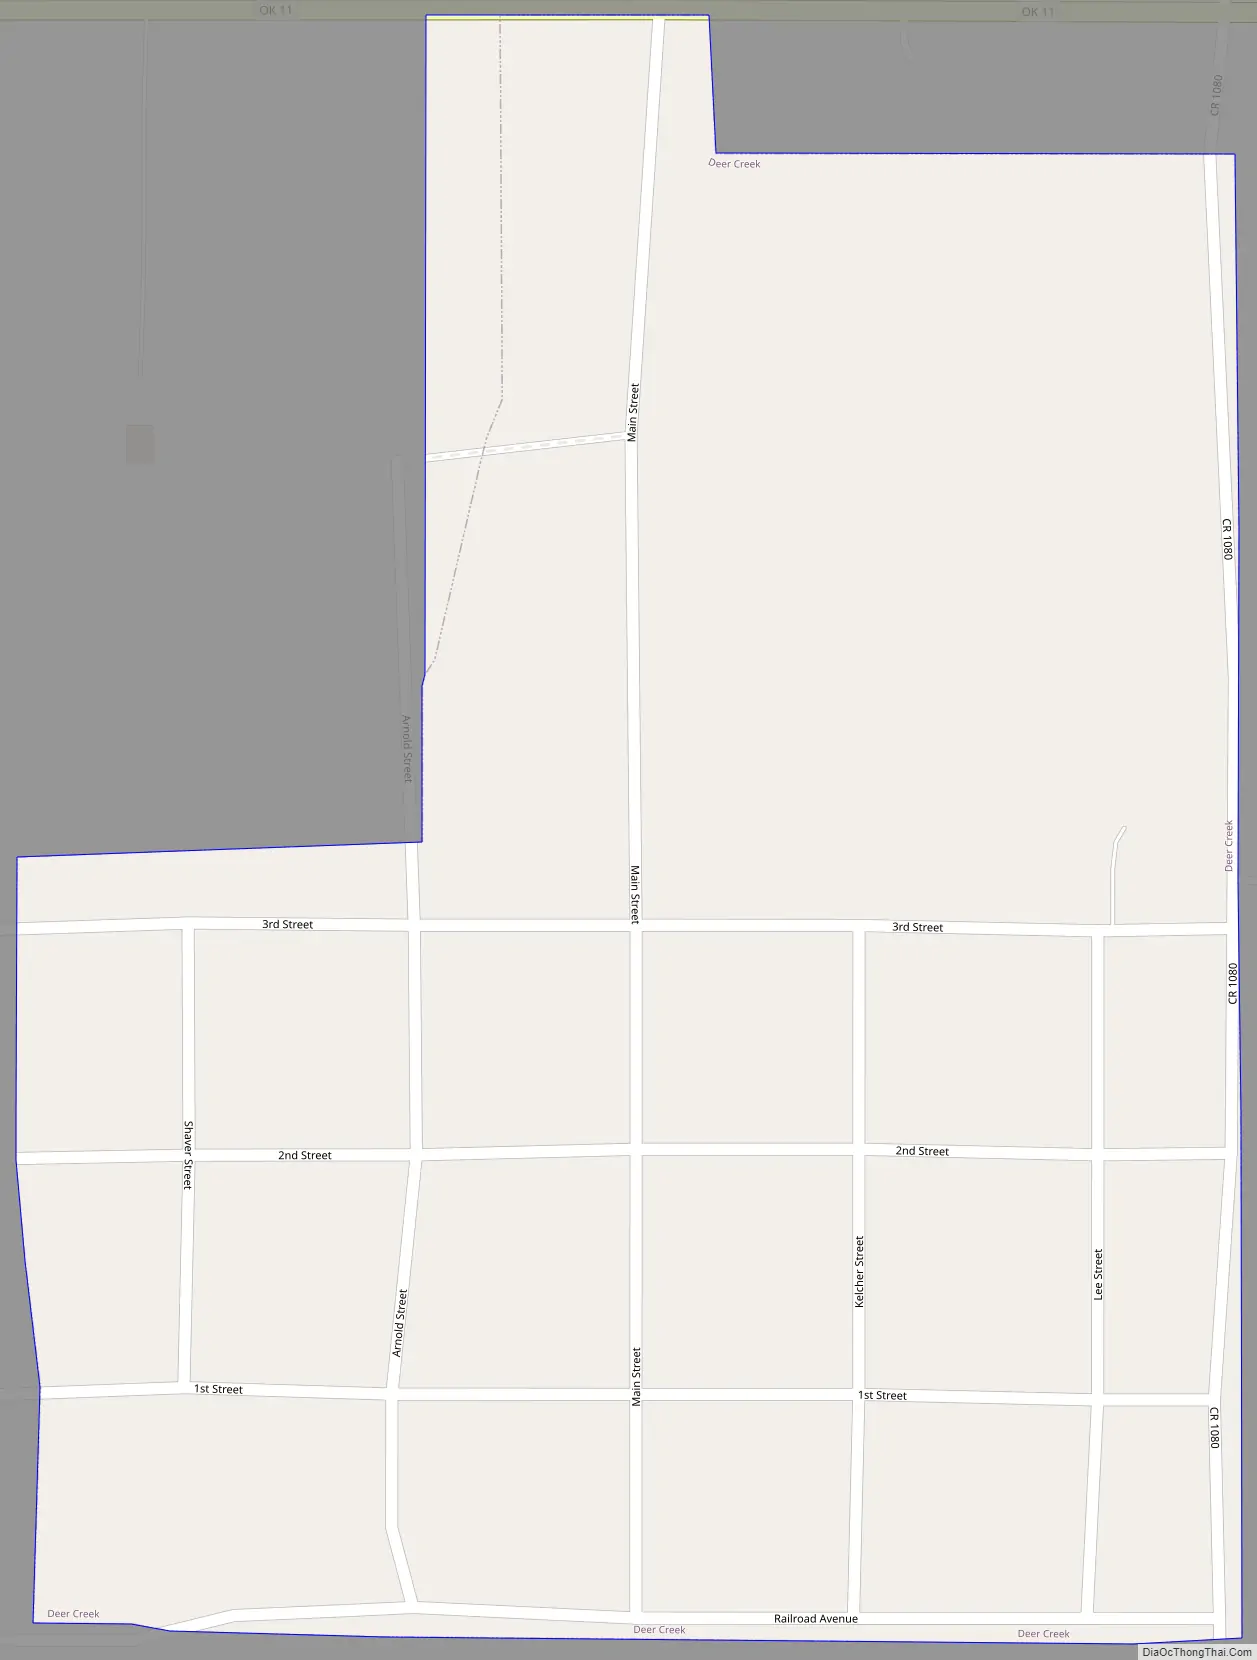 Map of Deer Creek town, Oklahoma